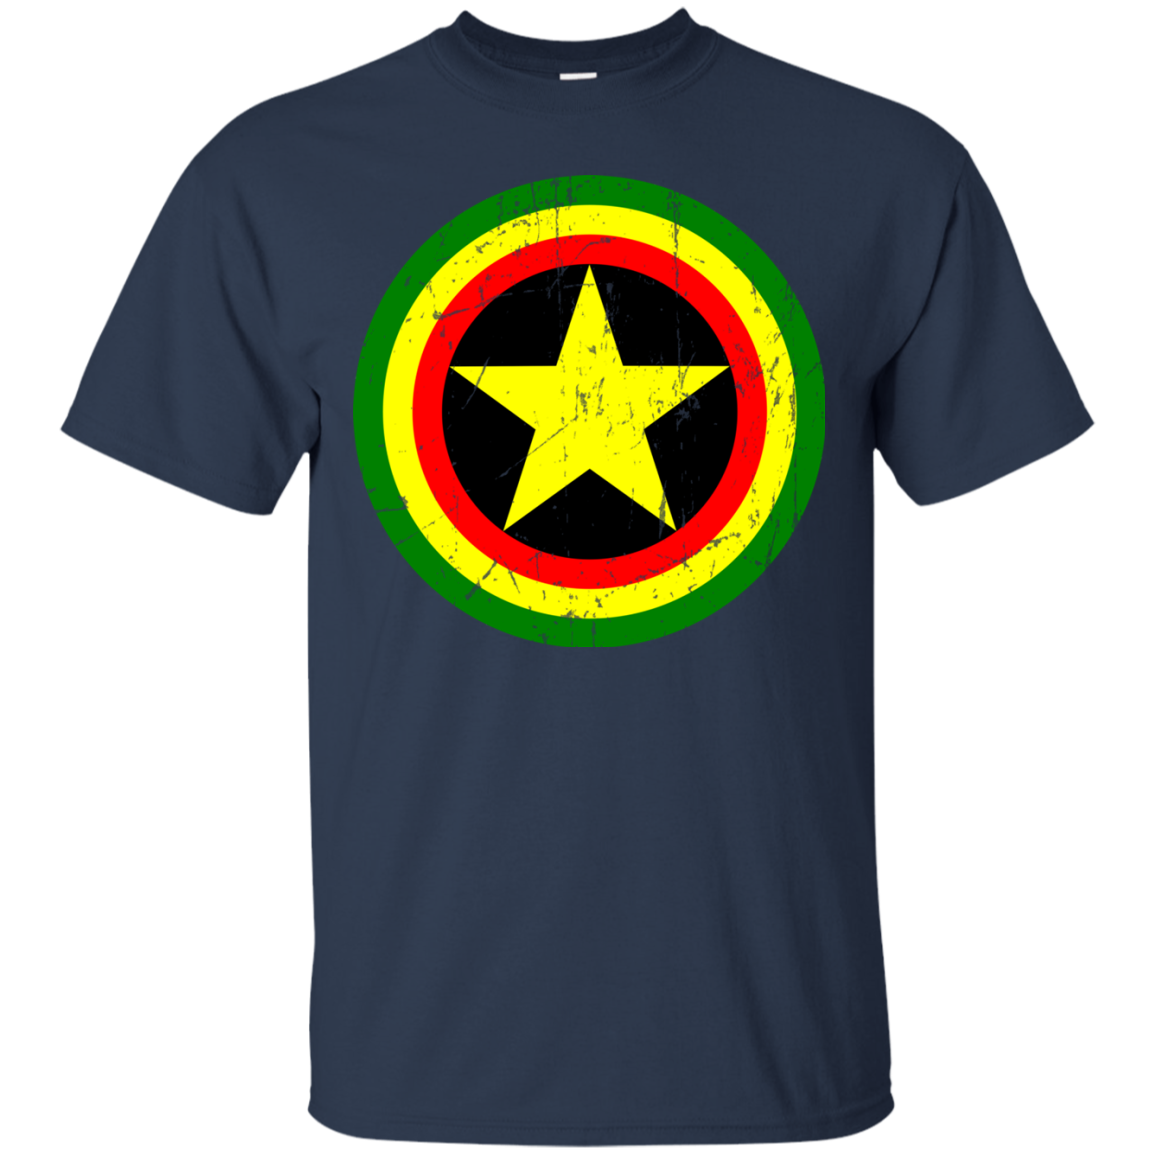 Captain Rasta T-Shirt